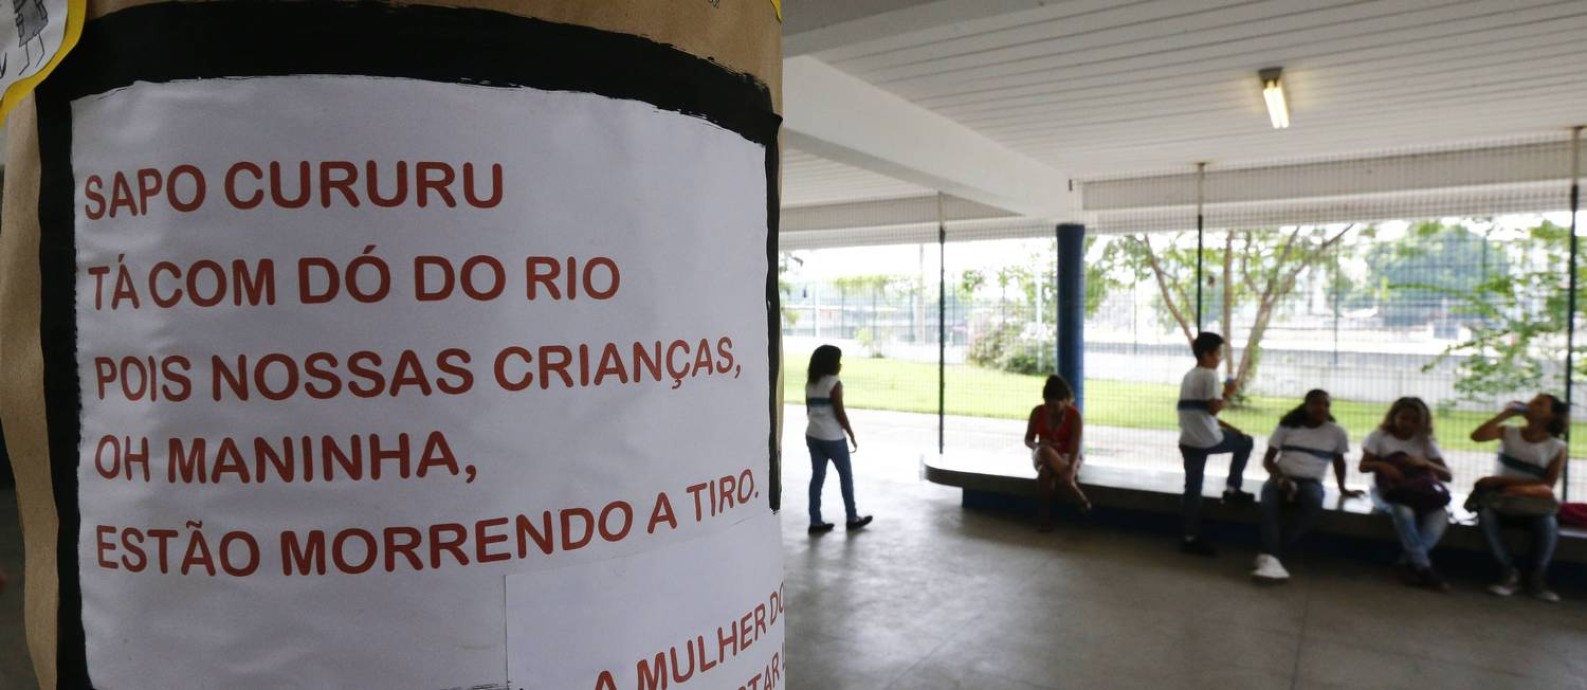 Alunos da escola próxima à de Maria Eduarda fazem versão de cantiga para protestar contra a violência Foto: PABLO JACOB / Agência O Globo